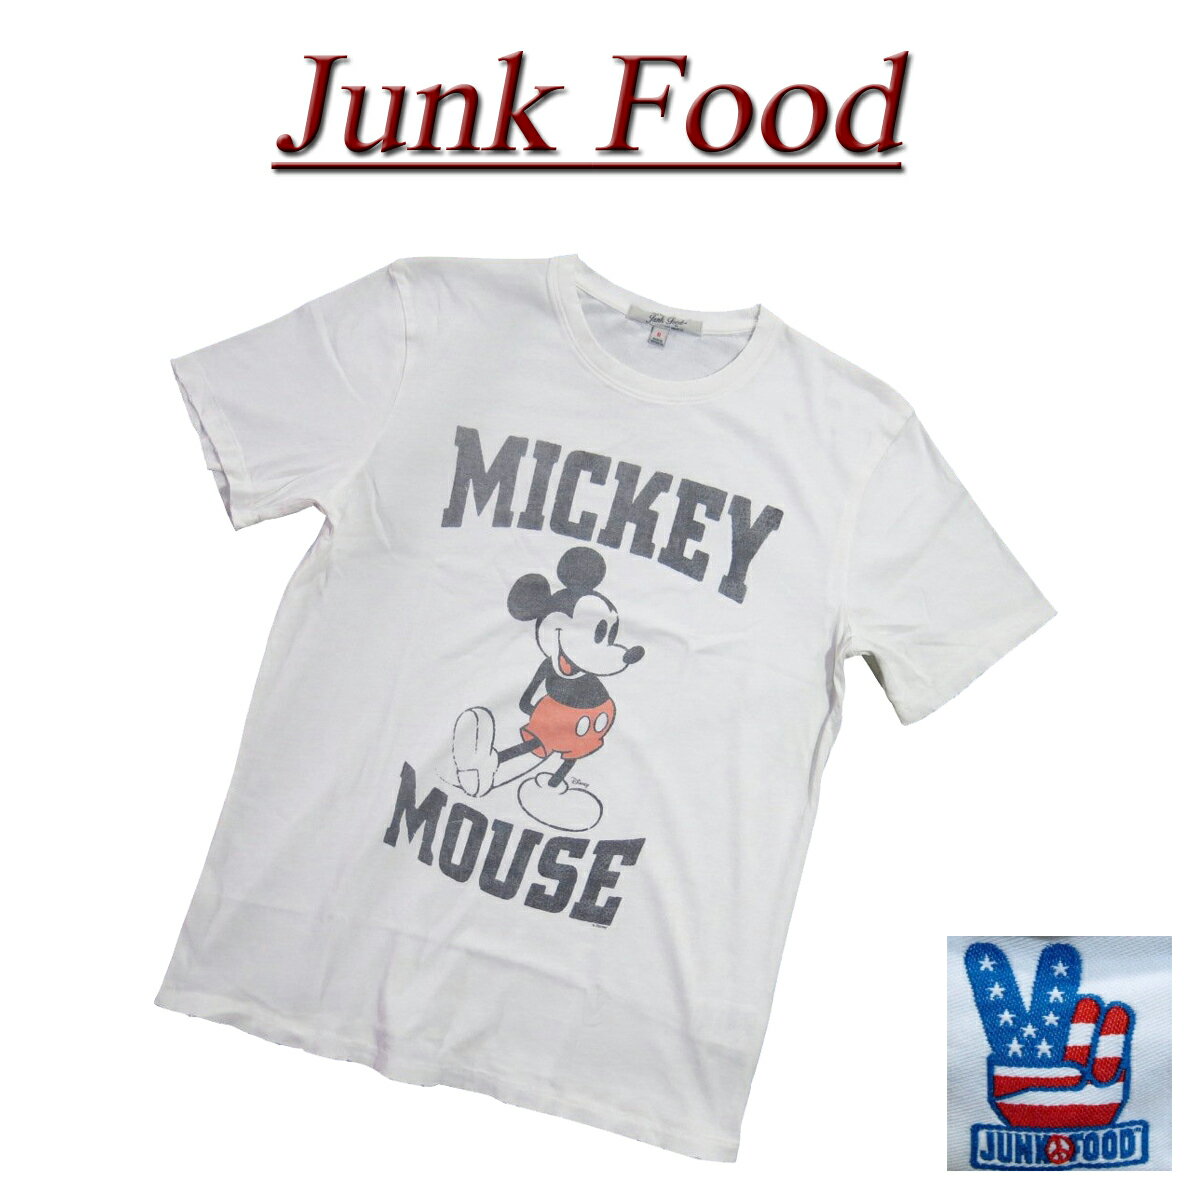 【US規格 5サイズ】 ac641 新品 JUNK FOOD ミッキーマウス ビンテージ調 ダメージ加工 半袖 Tシャツ 12MS103XDIS038 メンズ ジャンクフード MICKEY MOUSE DISNEY ティーシャツ JunkFood 【smtb-kd】